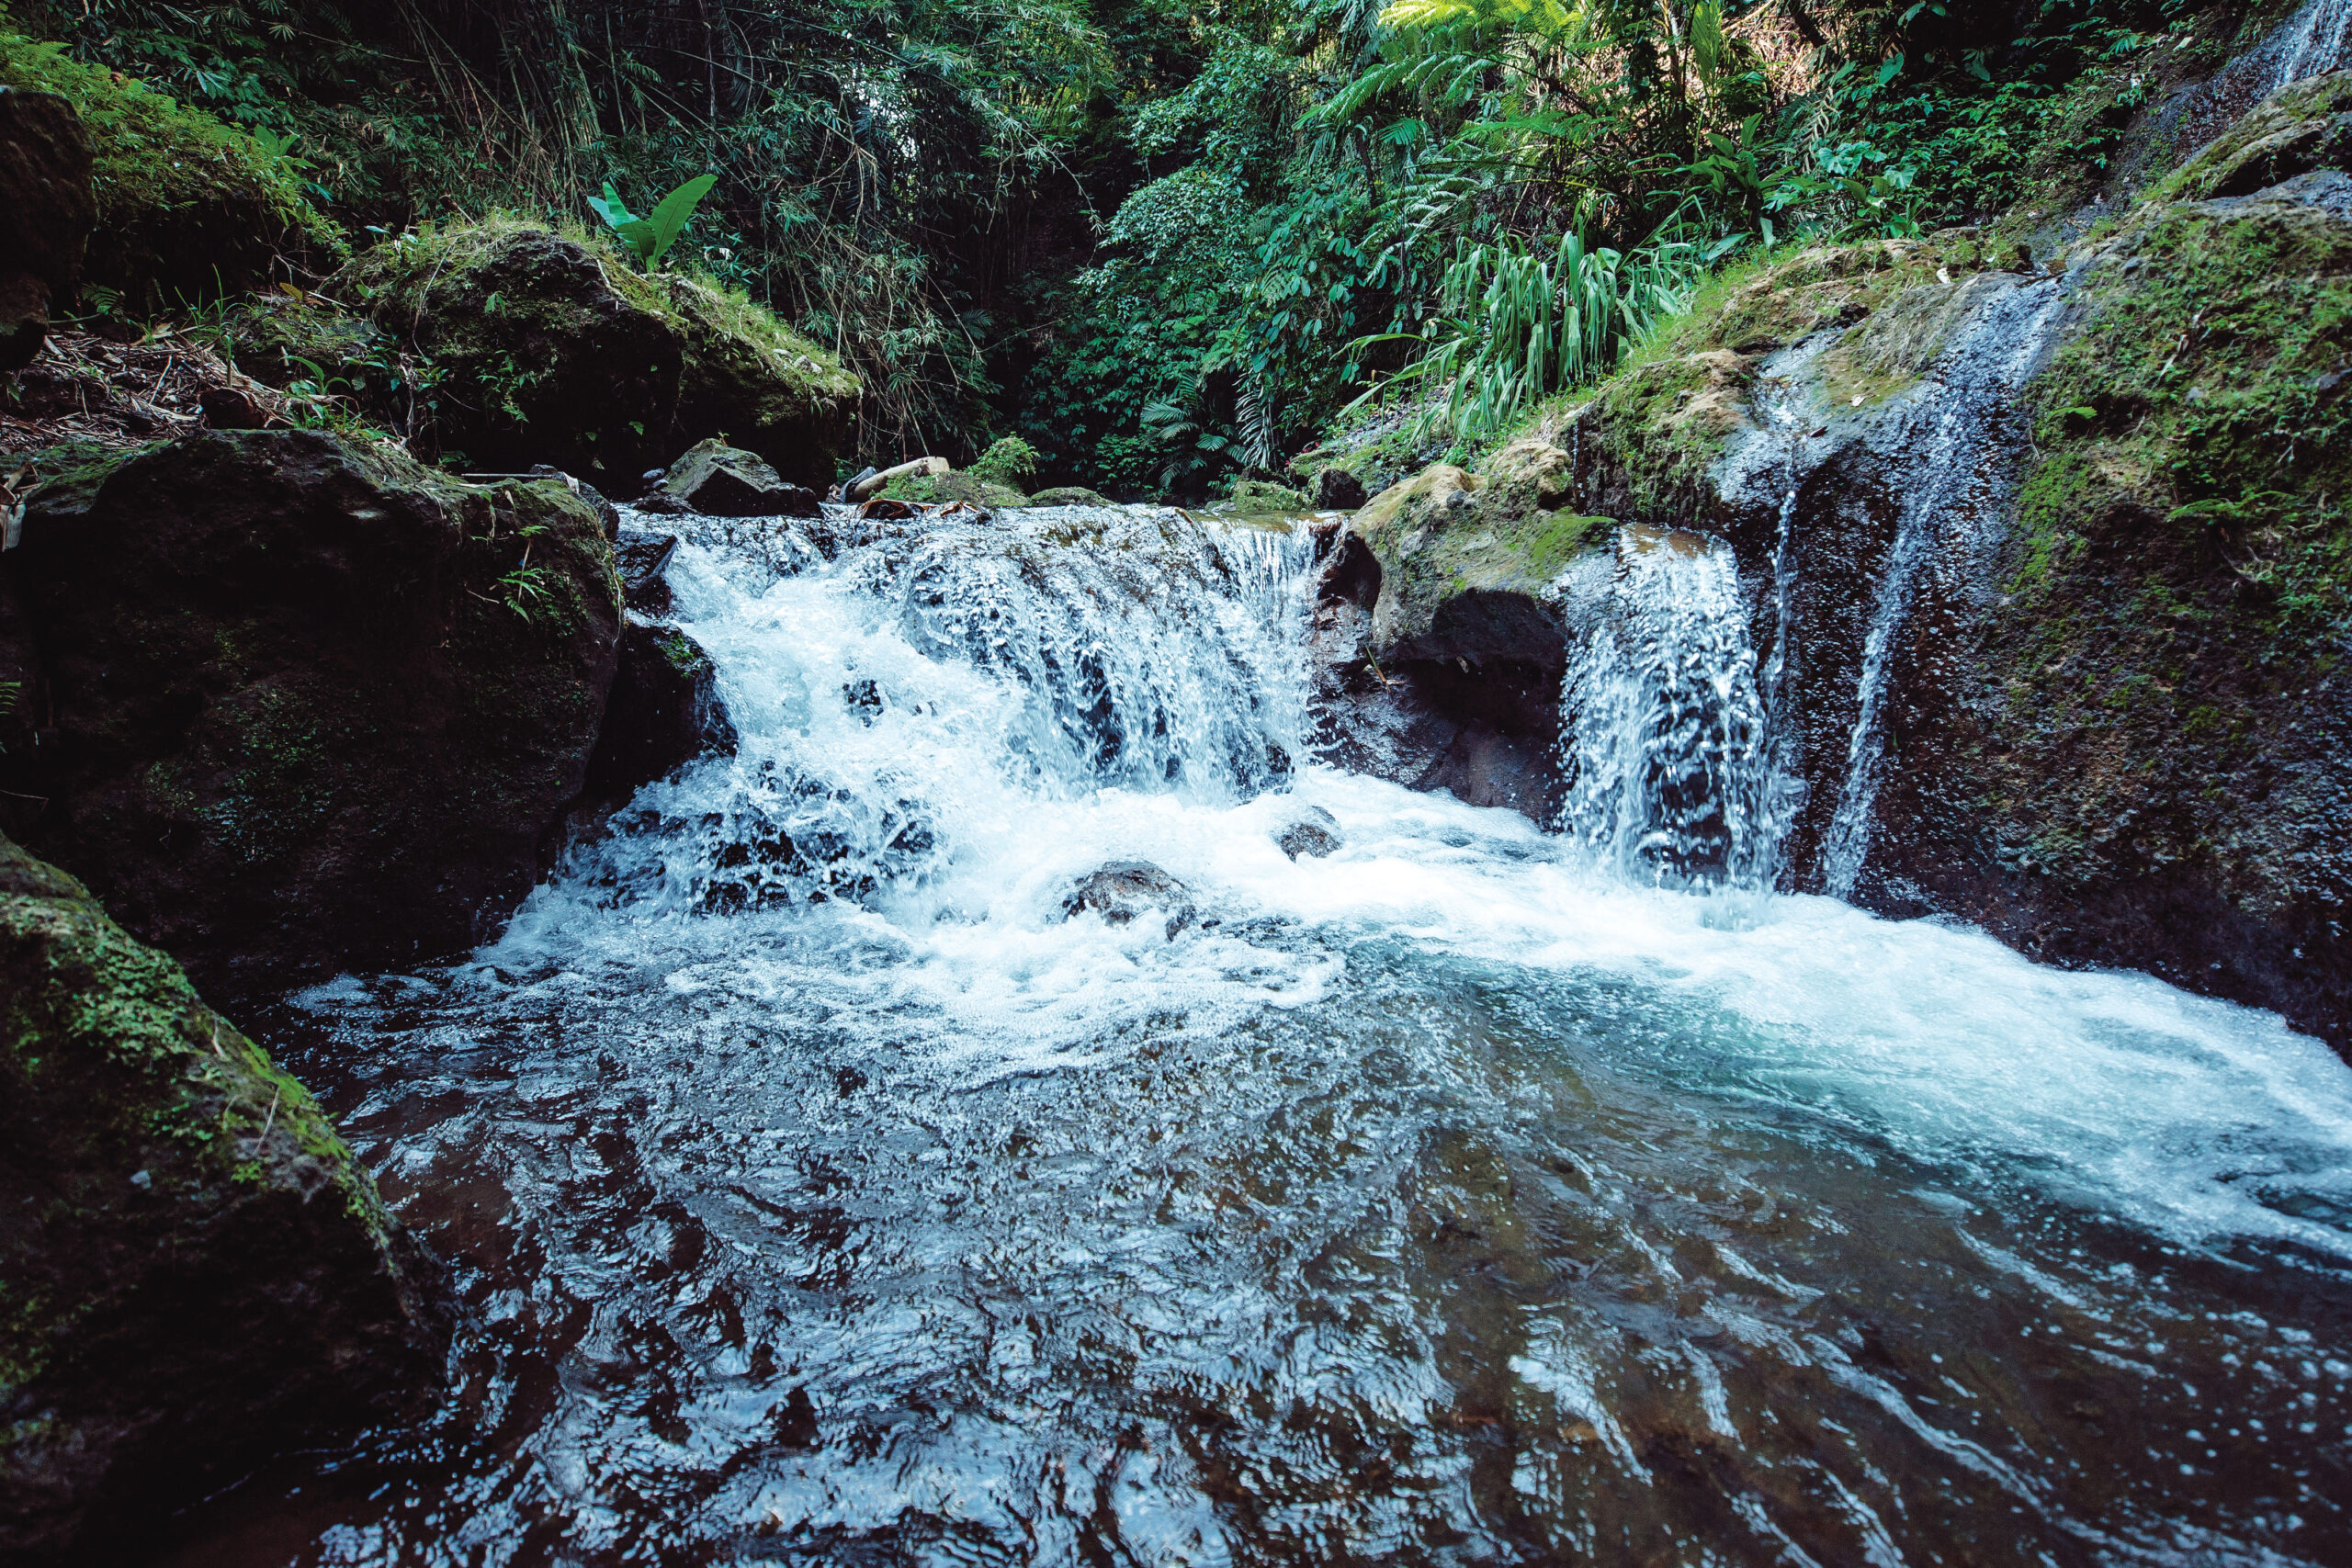 Pha Kluai Mai Waterfall